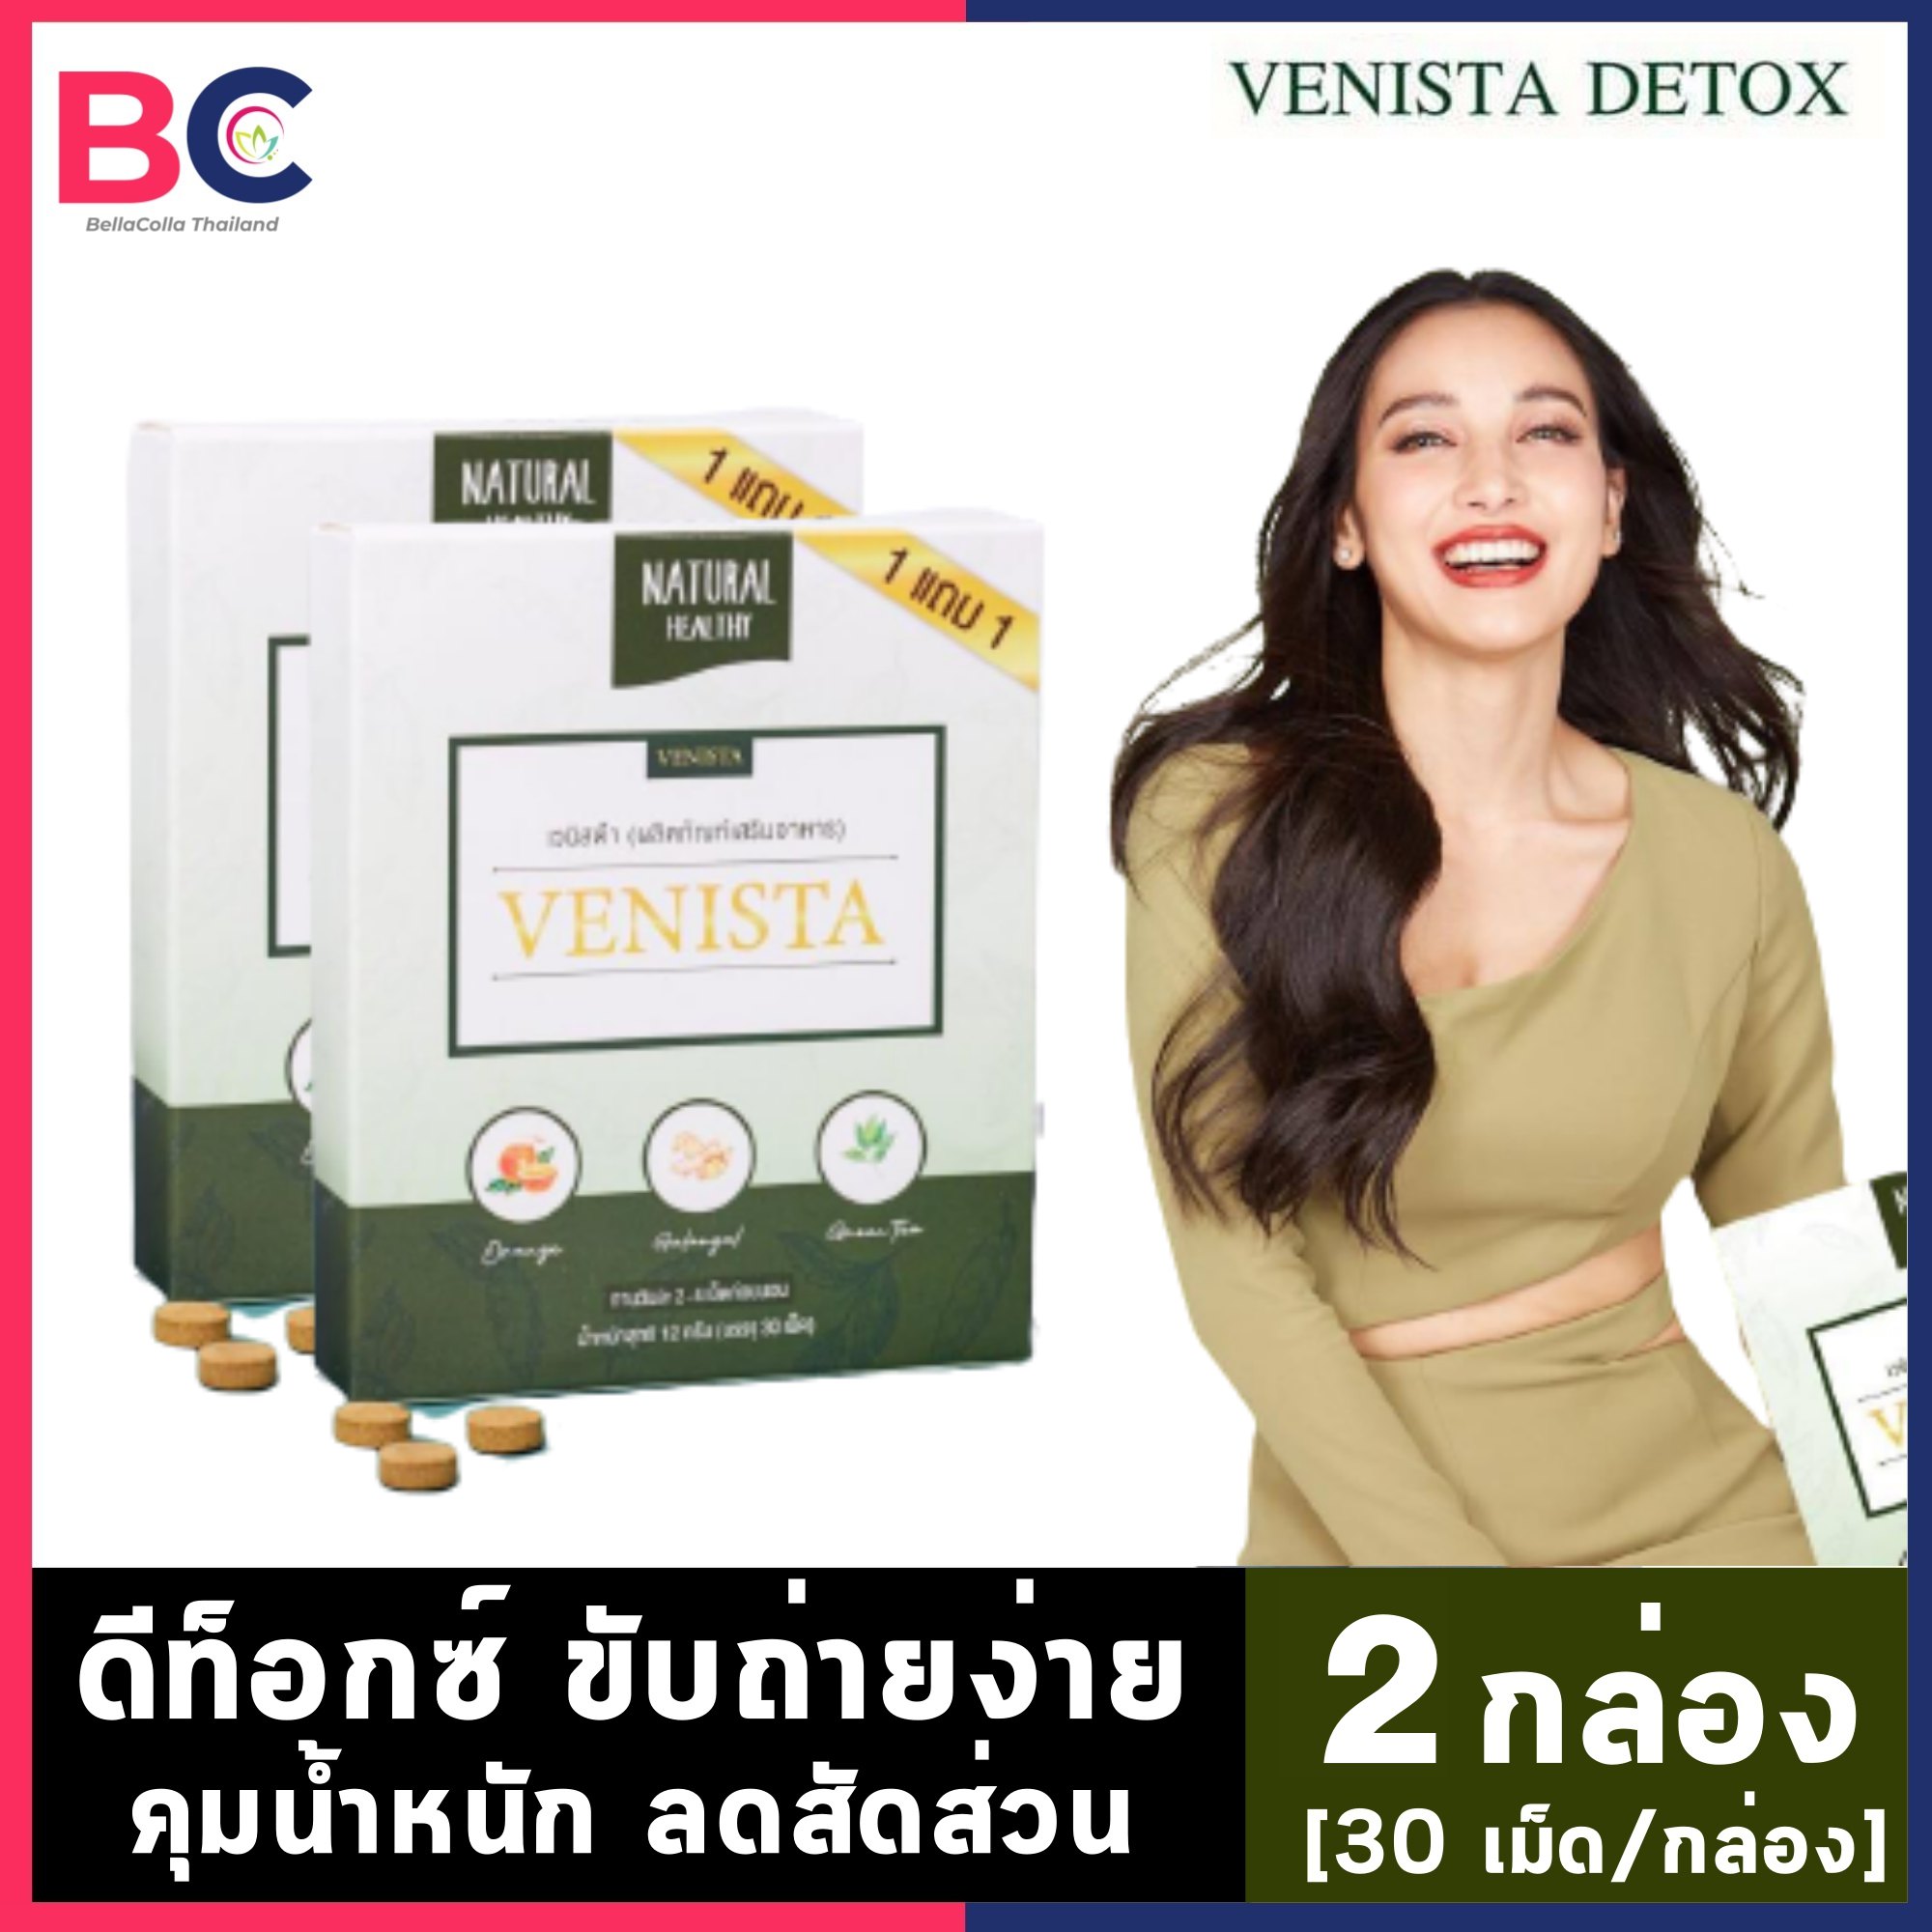 เวนิสต้าดีท็อก [2 กล่อง] [30 เม็ด/กล่อง] [ไม่แถม] Venista Detox อาหารเสริมดีทอกซ์ Bc อ้วนผอม. 